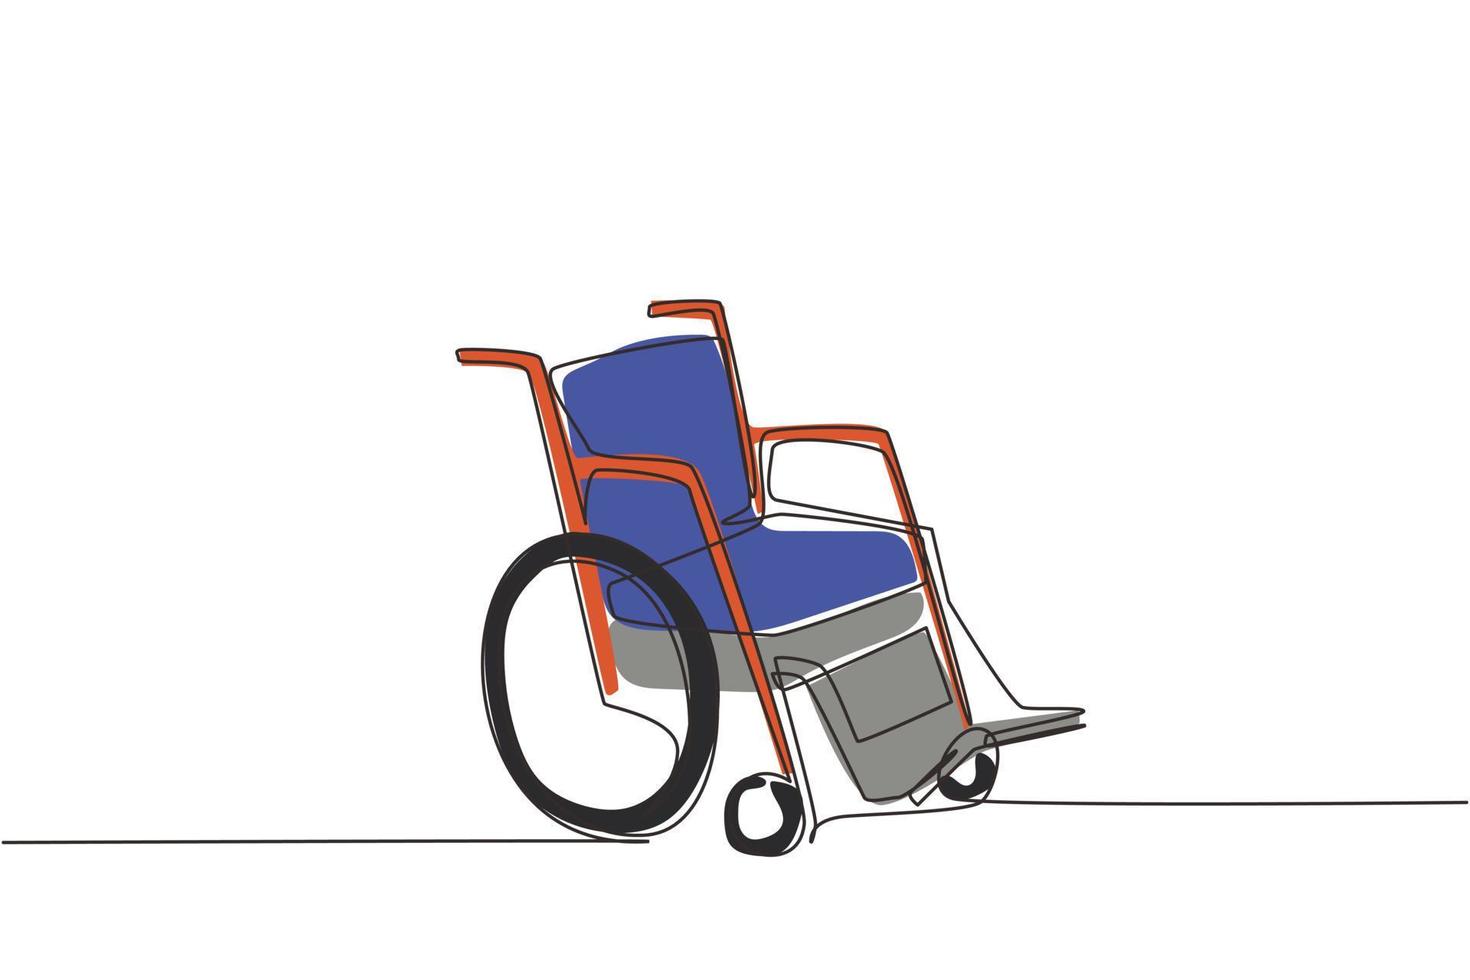 doorlopende rolstoel met één lijntekening voor mensen met een handicap. lege loopwagen wagen apparaat. met de hand getekend object voor gezondheidszorgtherapie. enkele lijn tekenen ontwerp vector grafische afbeelding